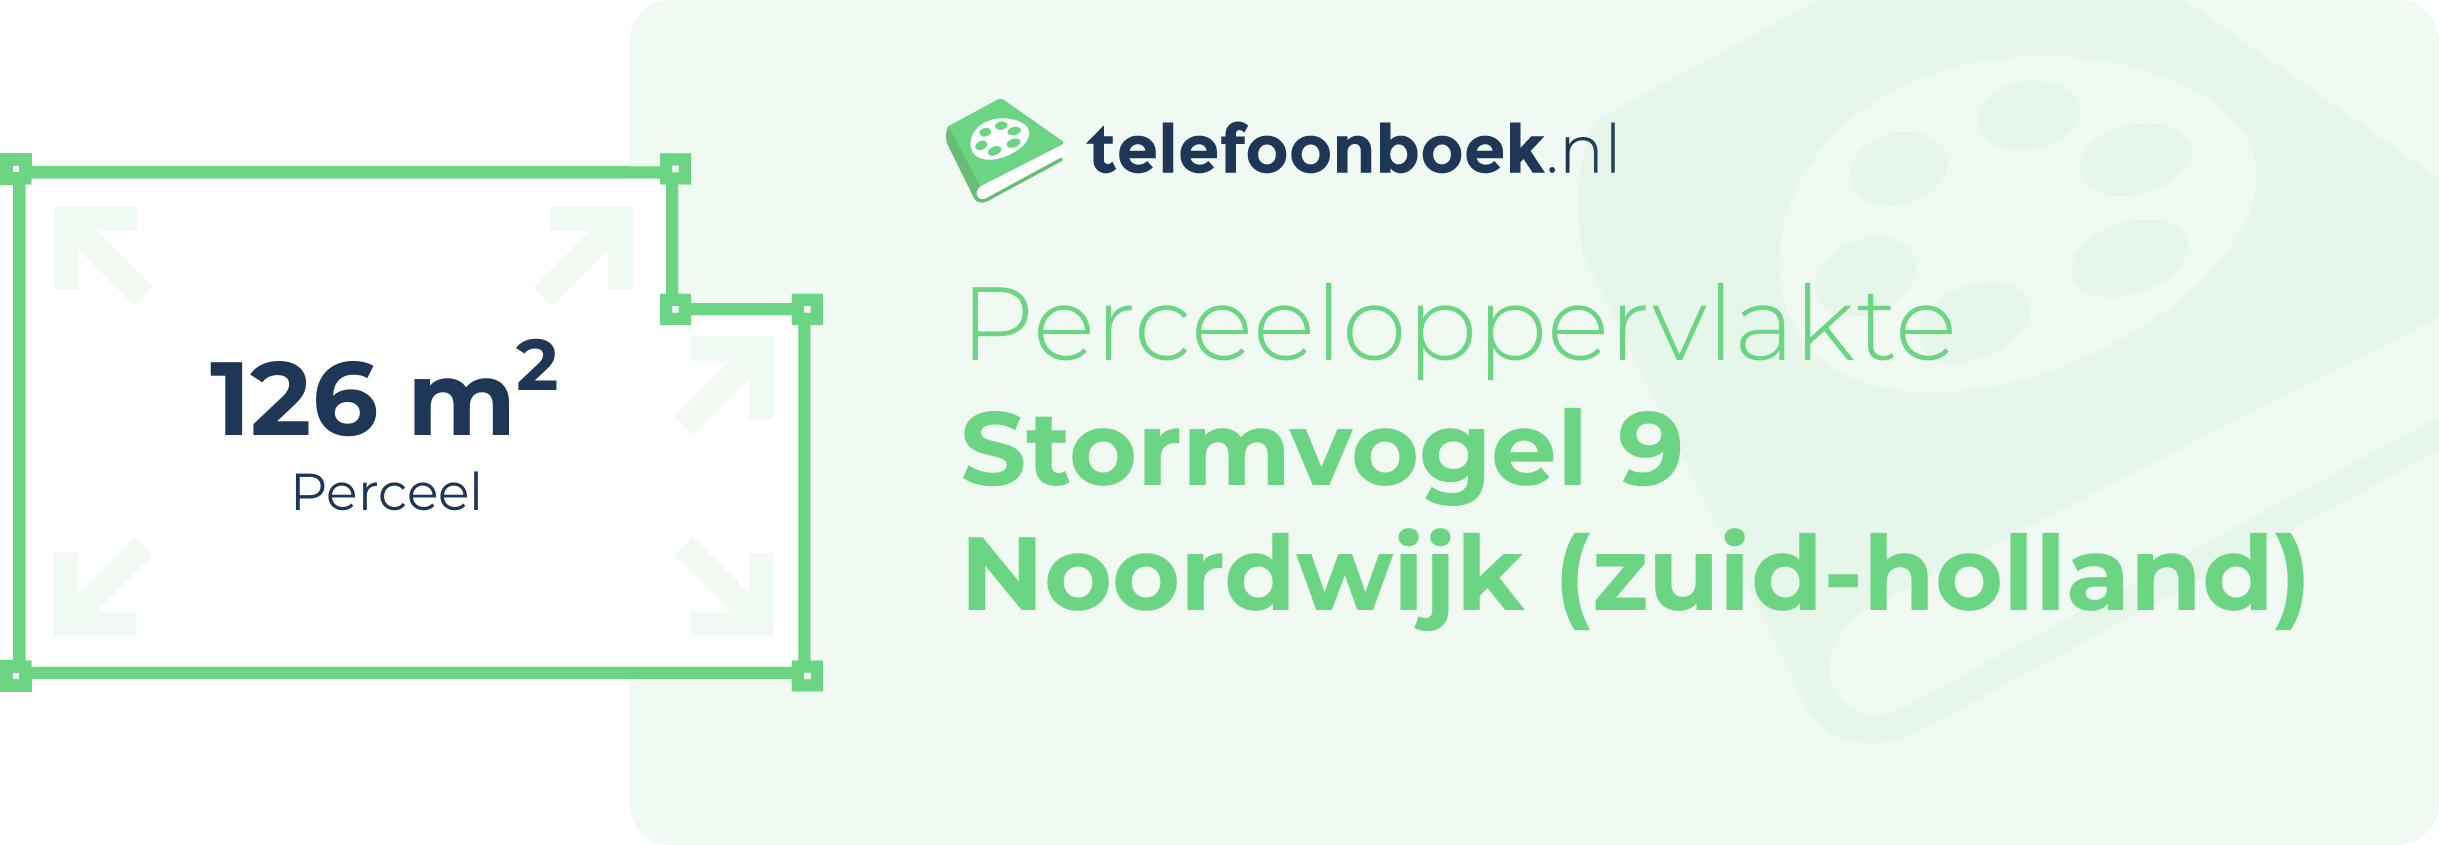 Perceeloppervlakte Stormvogel 9 Noordwijk (Zuid-Holland)